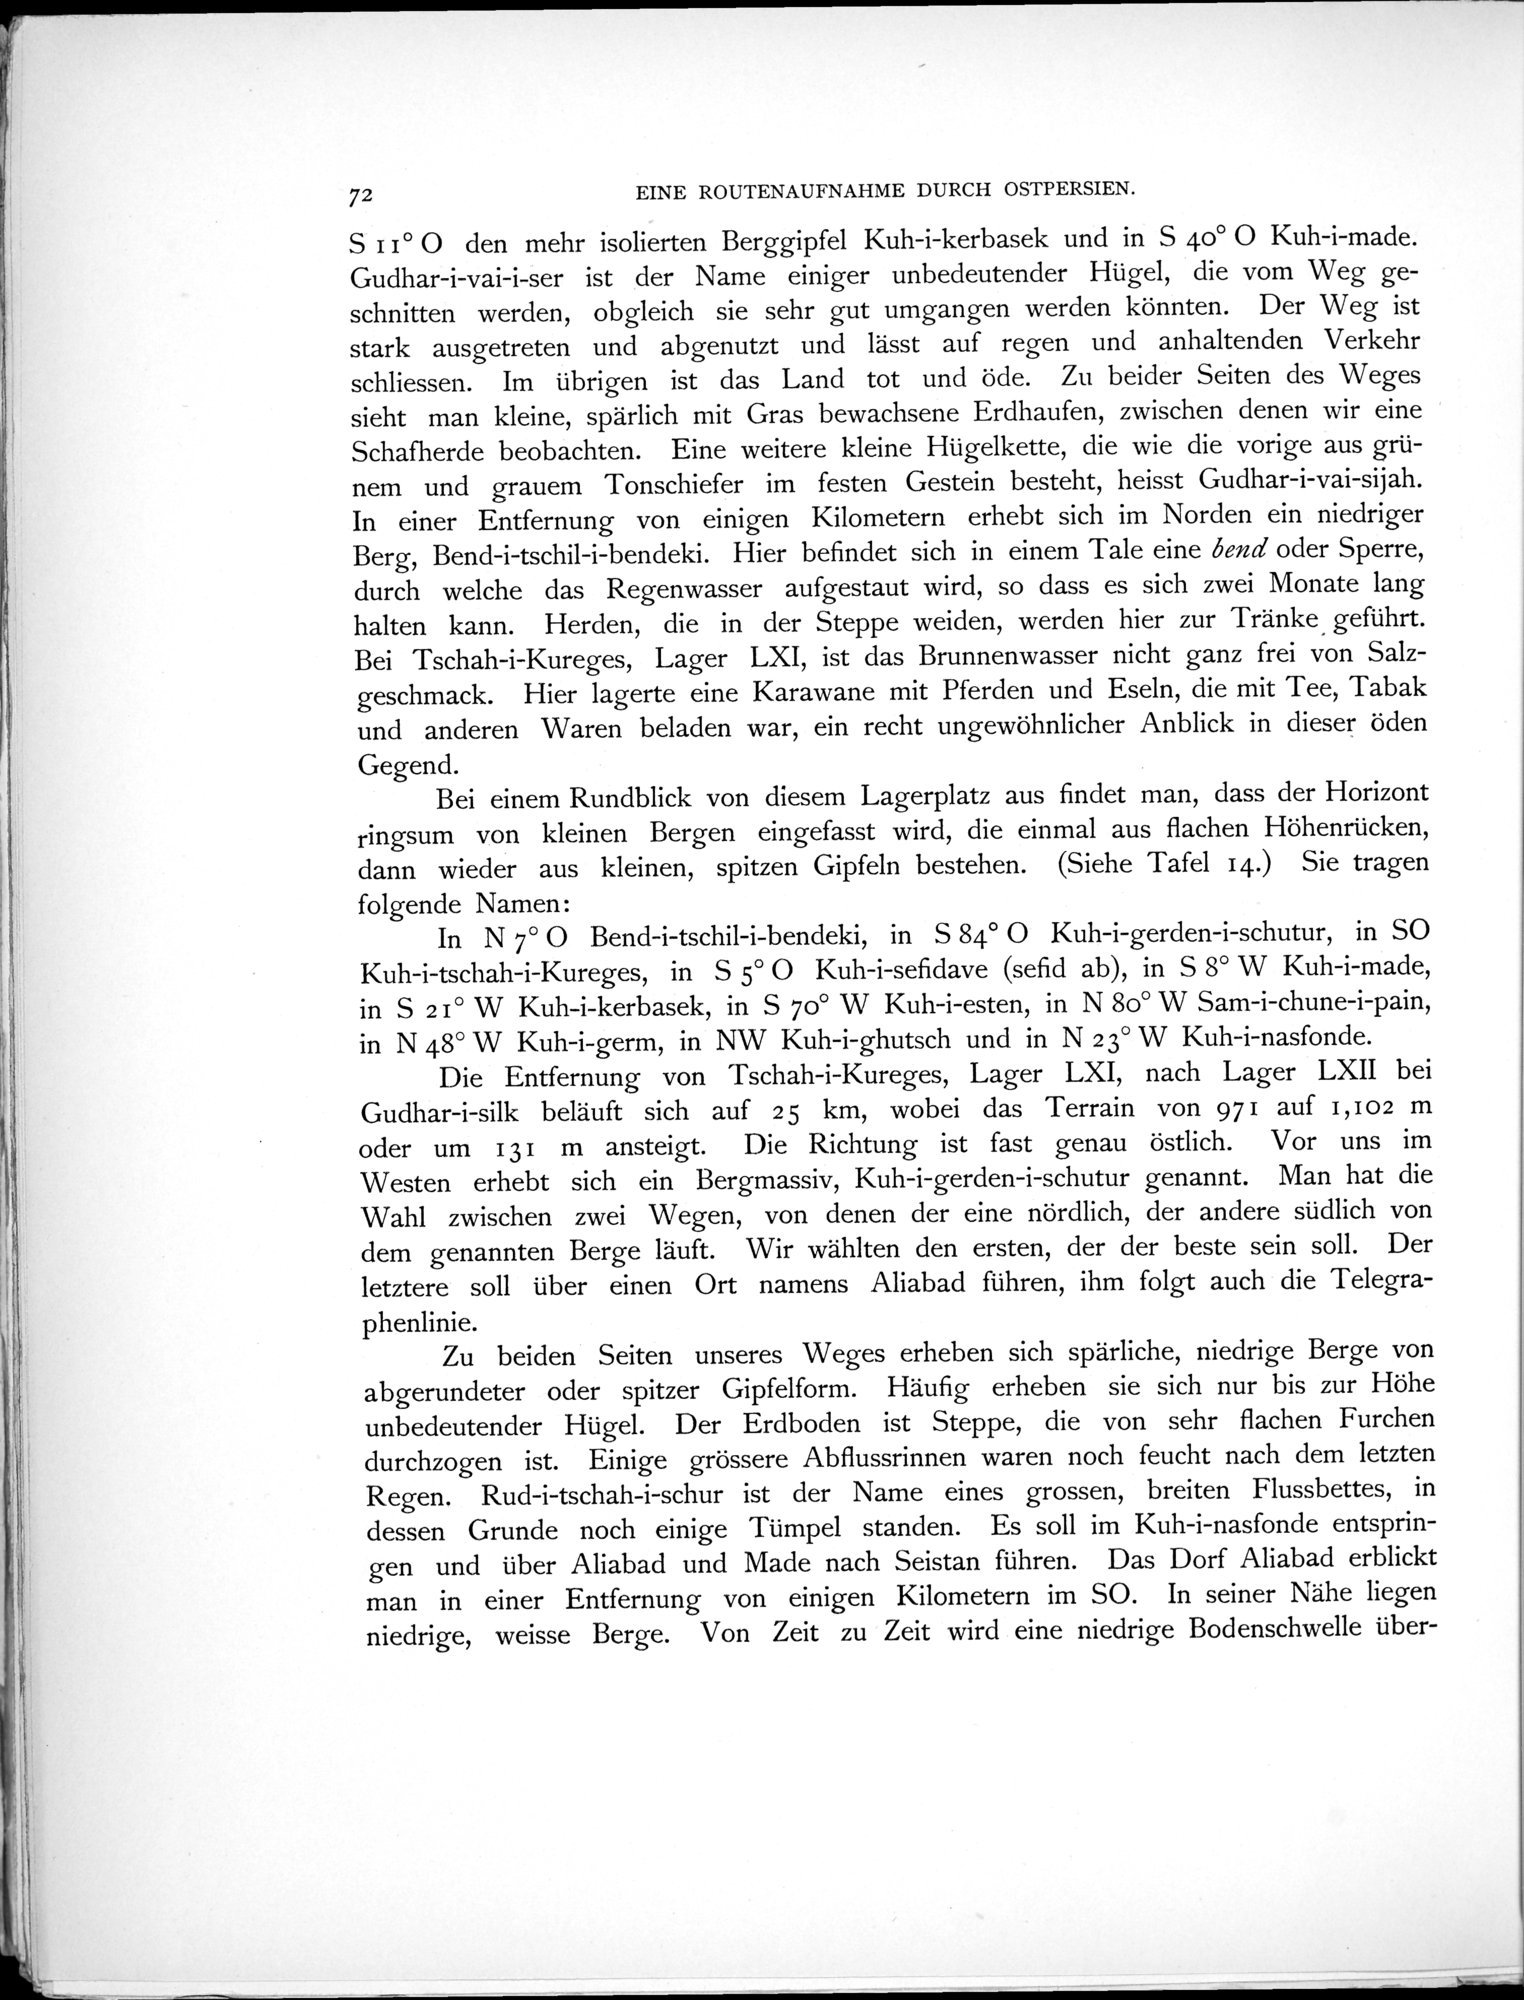 Eine Routenaufnahme durch Ostpersien : vol.1 / Page 232 (Grayscale High Resolution Image)